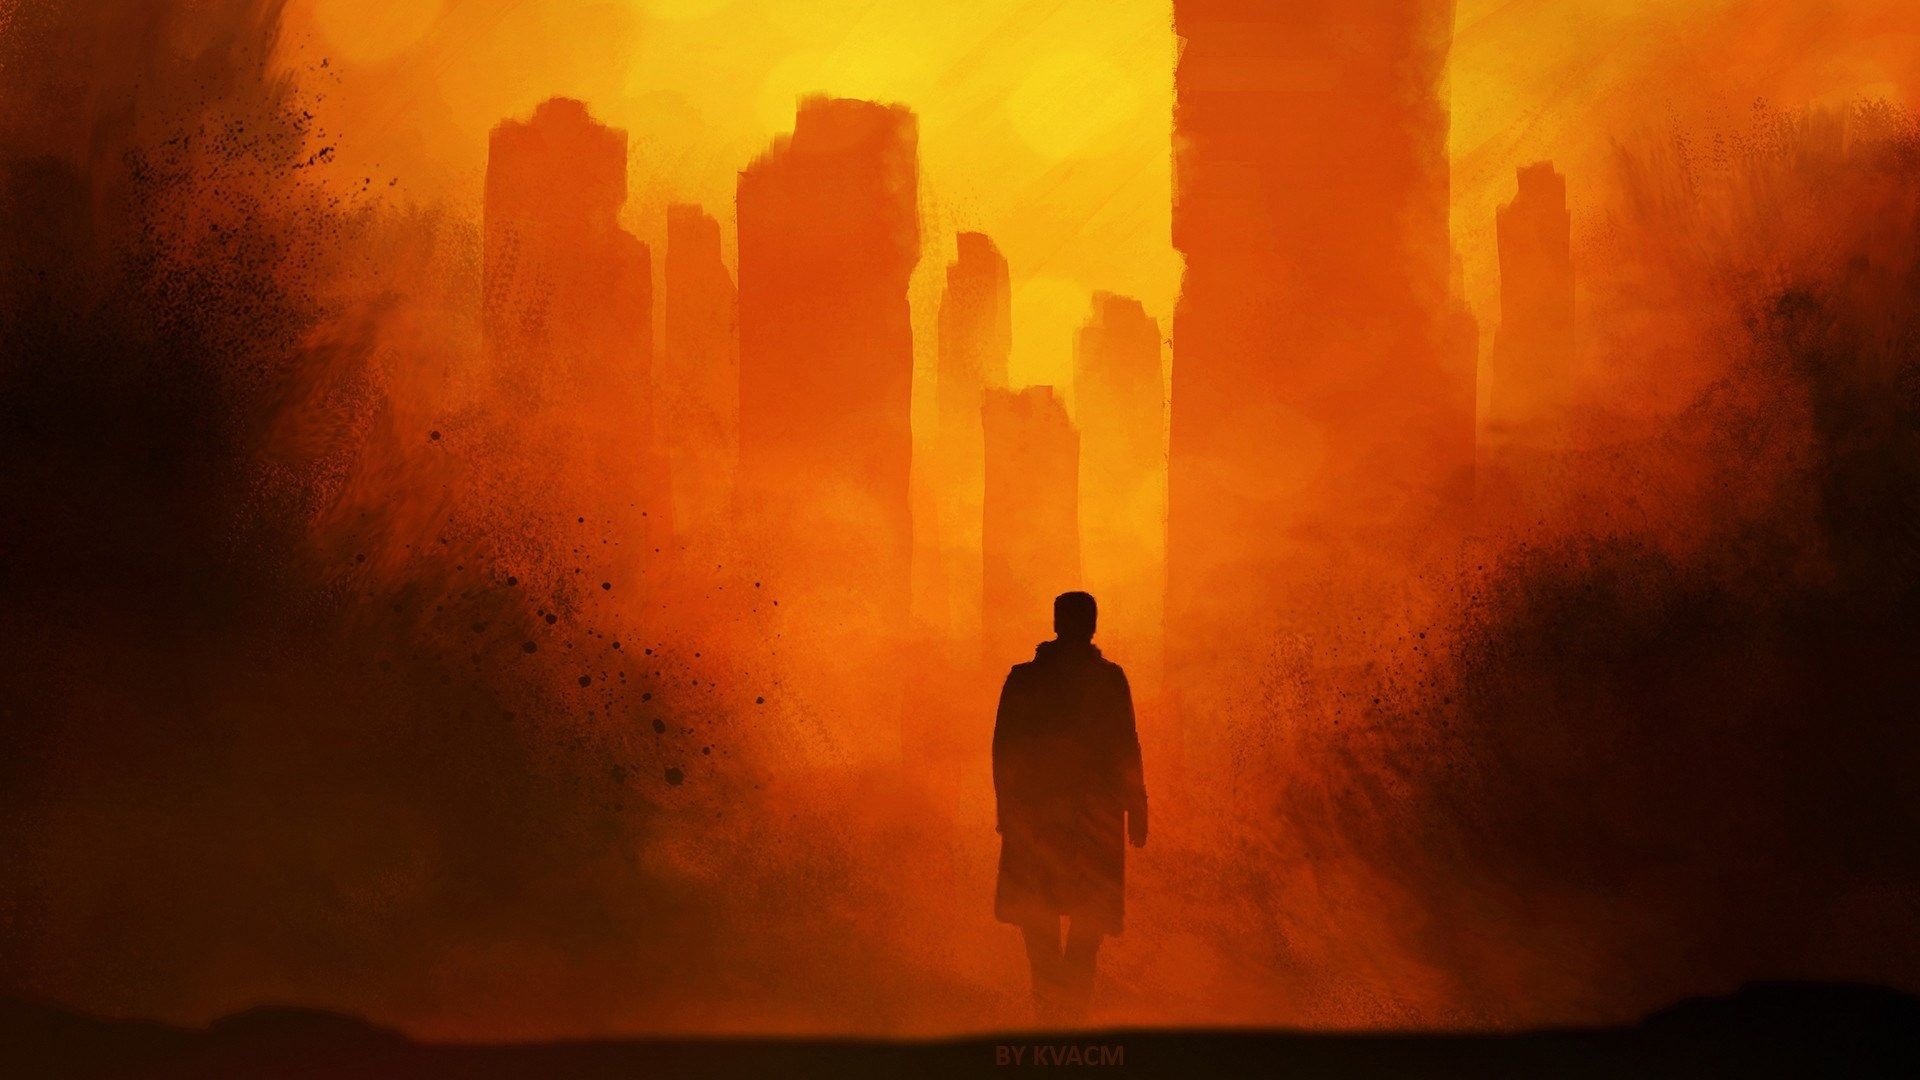 Blade Runner 2049 background, Blade Runner wallpaper, Blade Runner city, Artwork, 1920x1080 Full HD Desktop